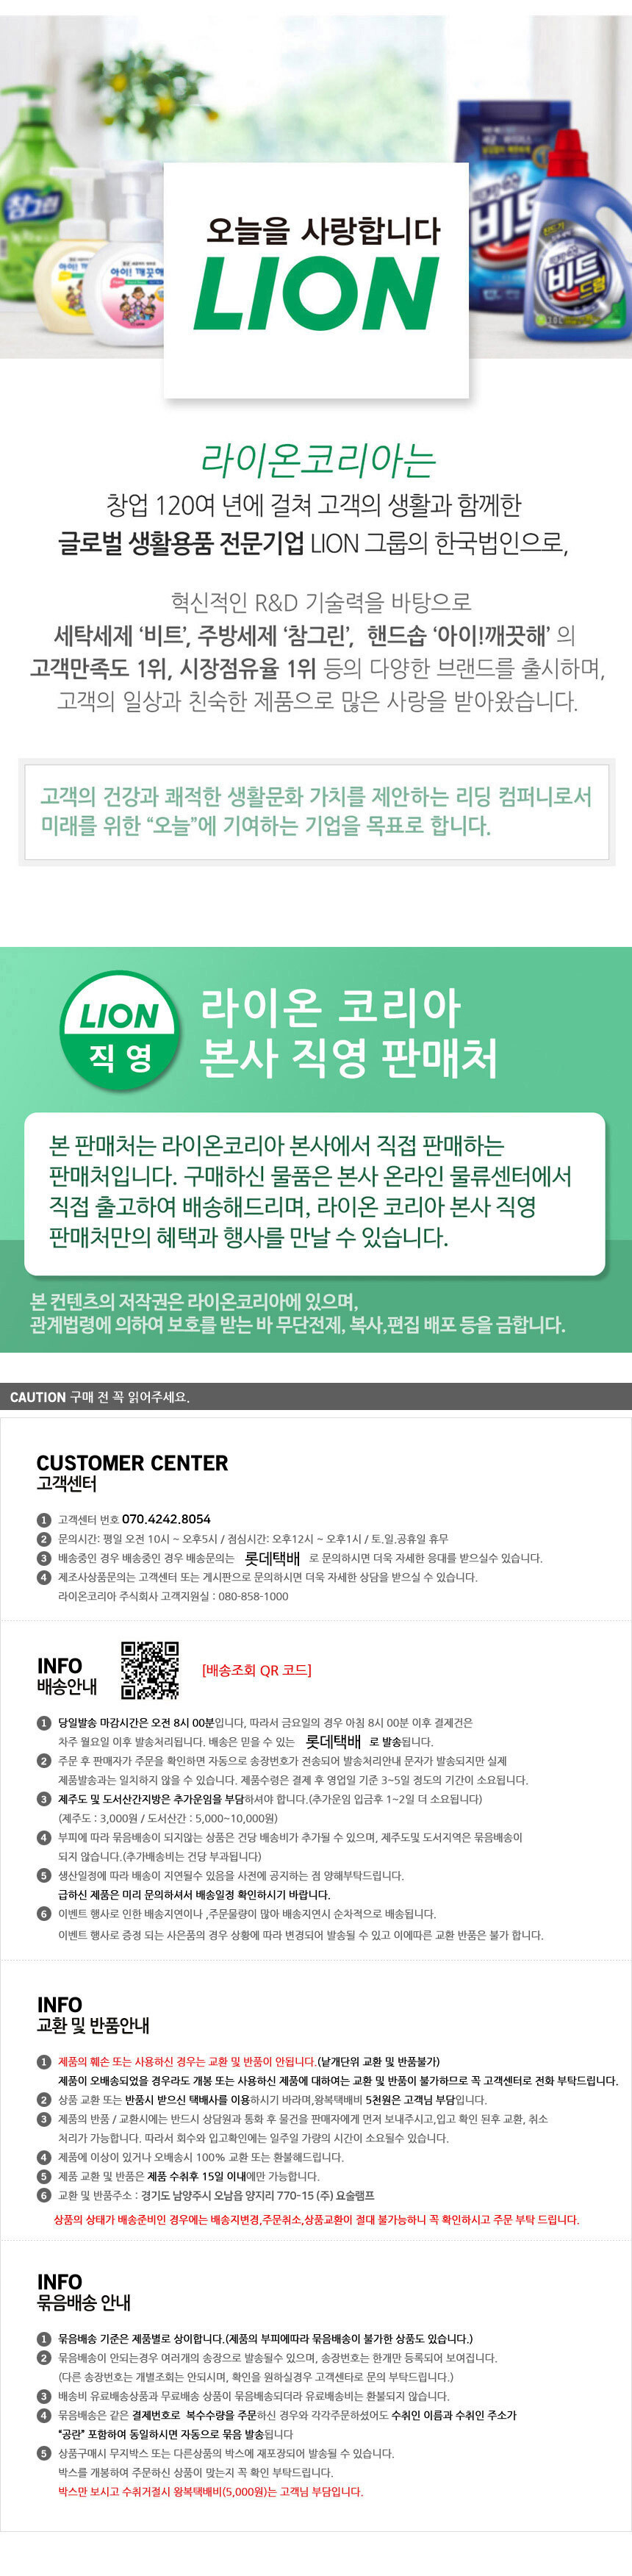 customer_center.jpg